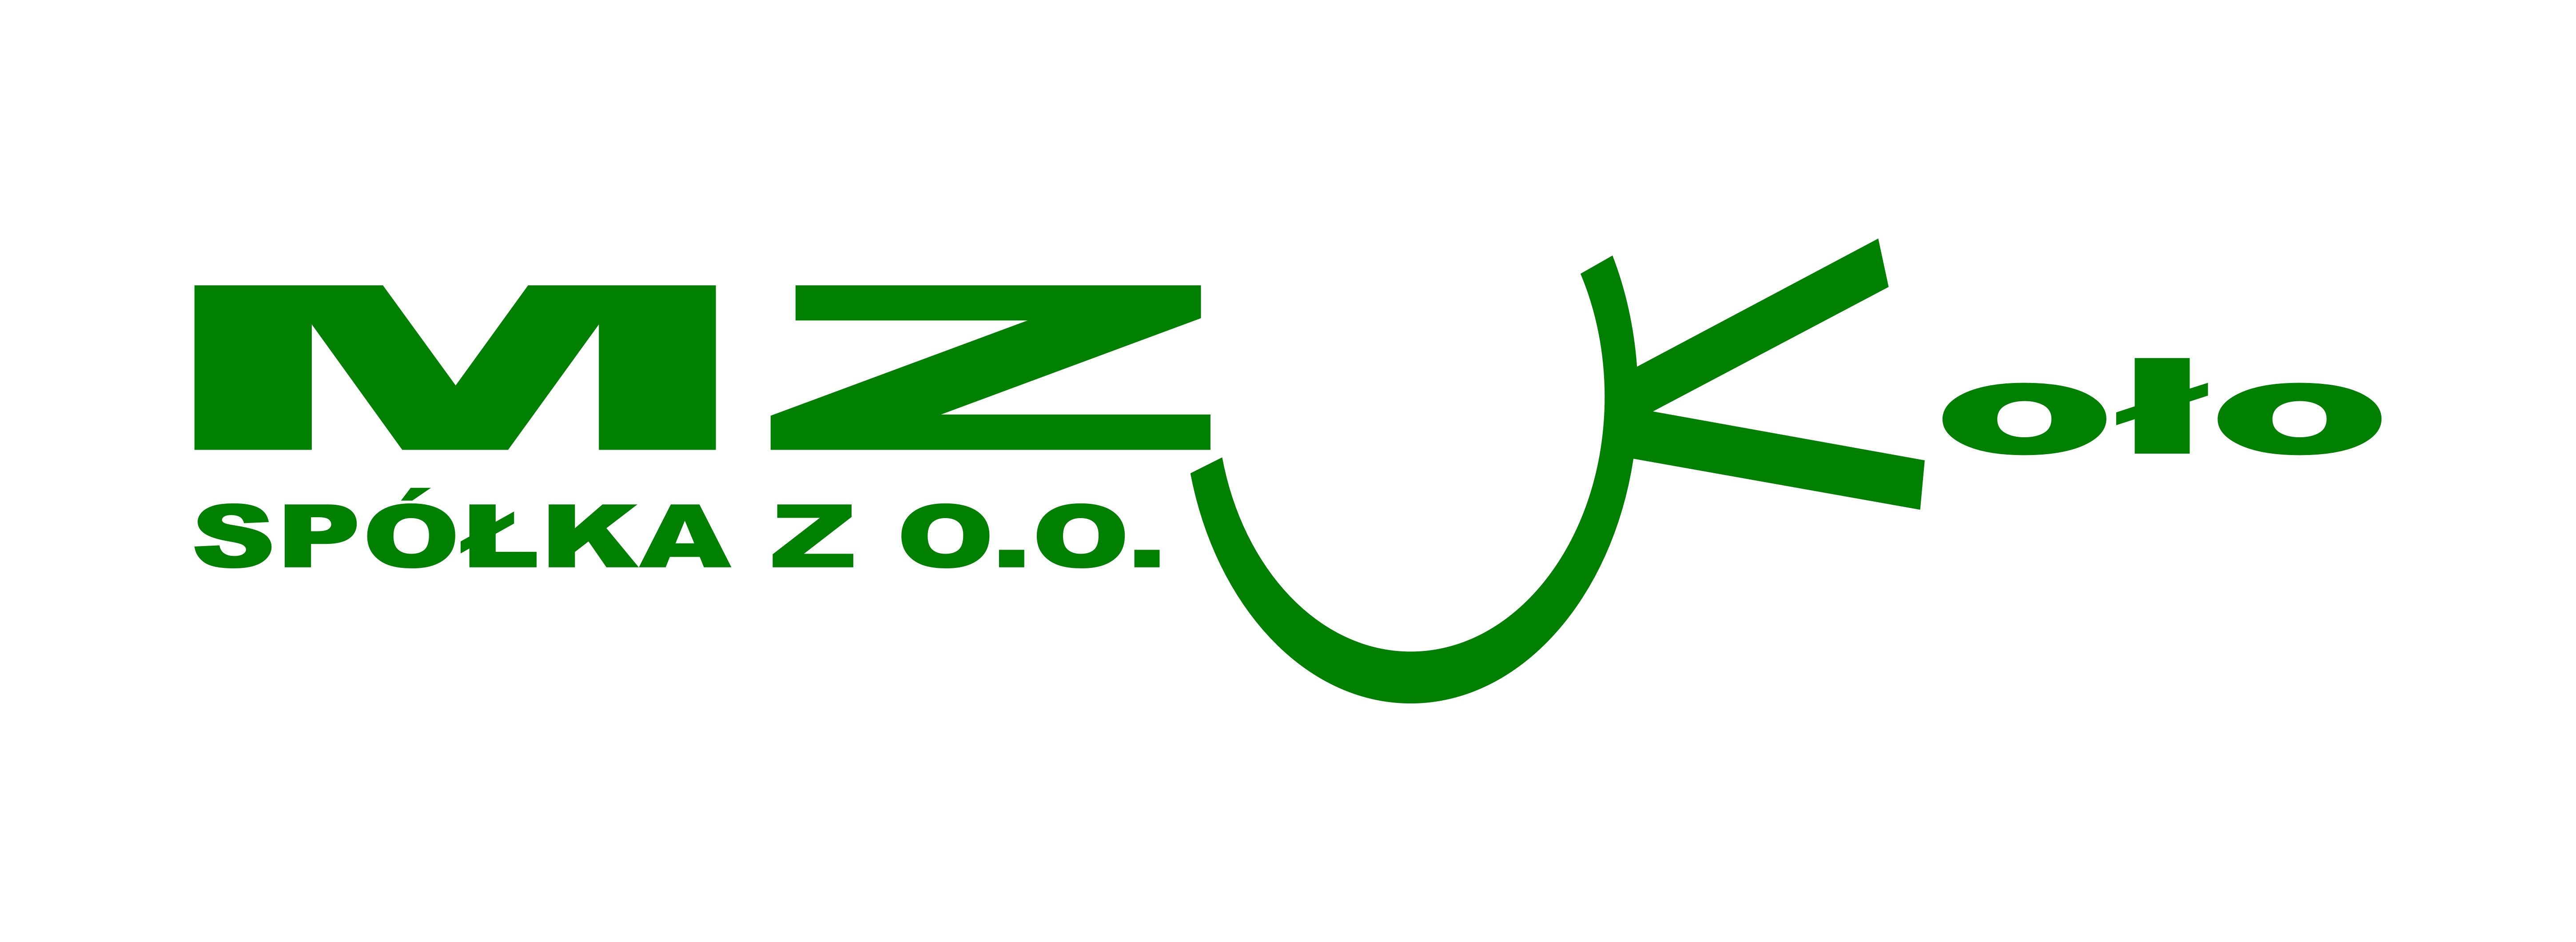 Zdjęcie przedstawia logo MZUK.